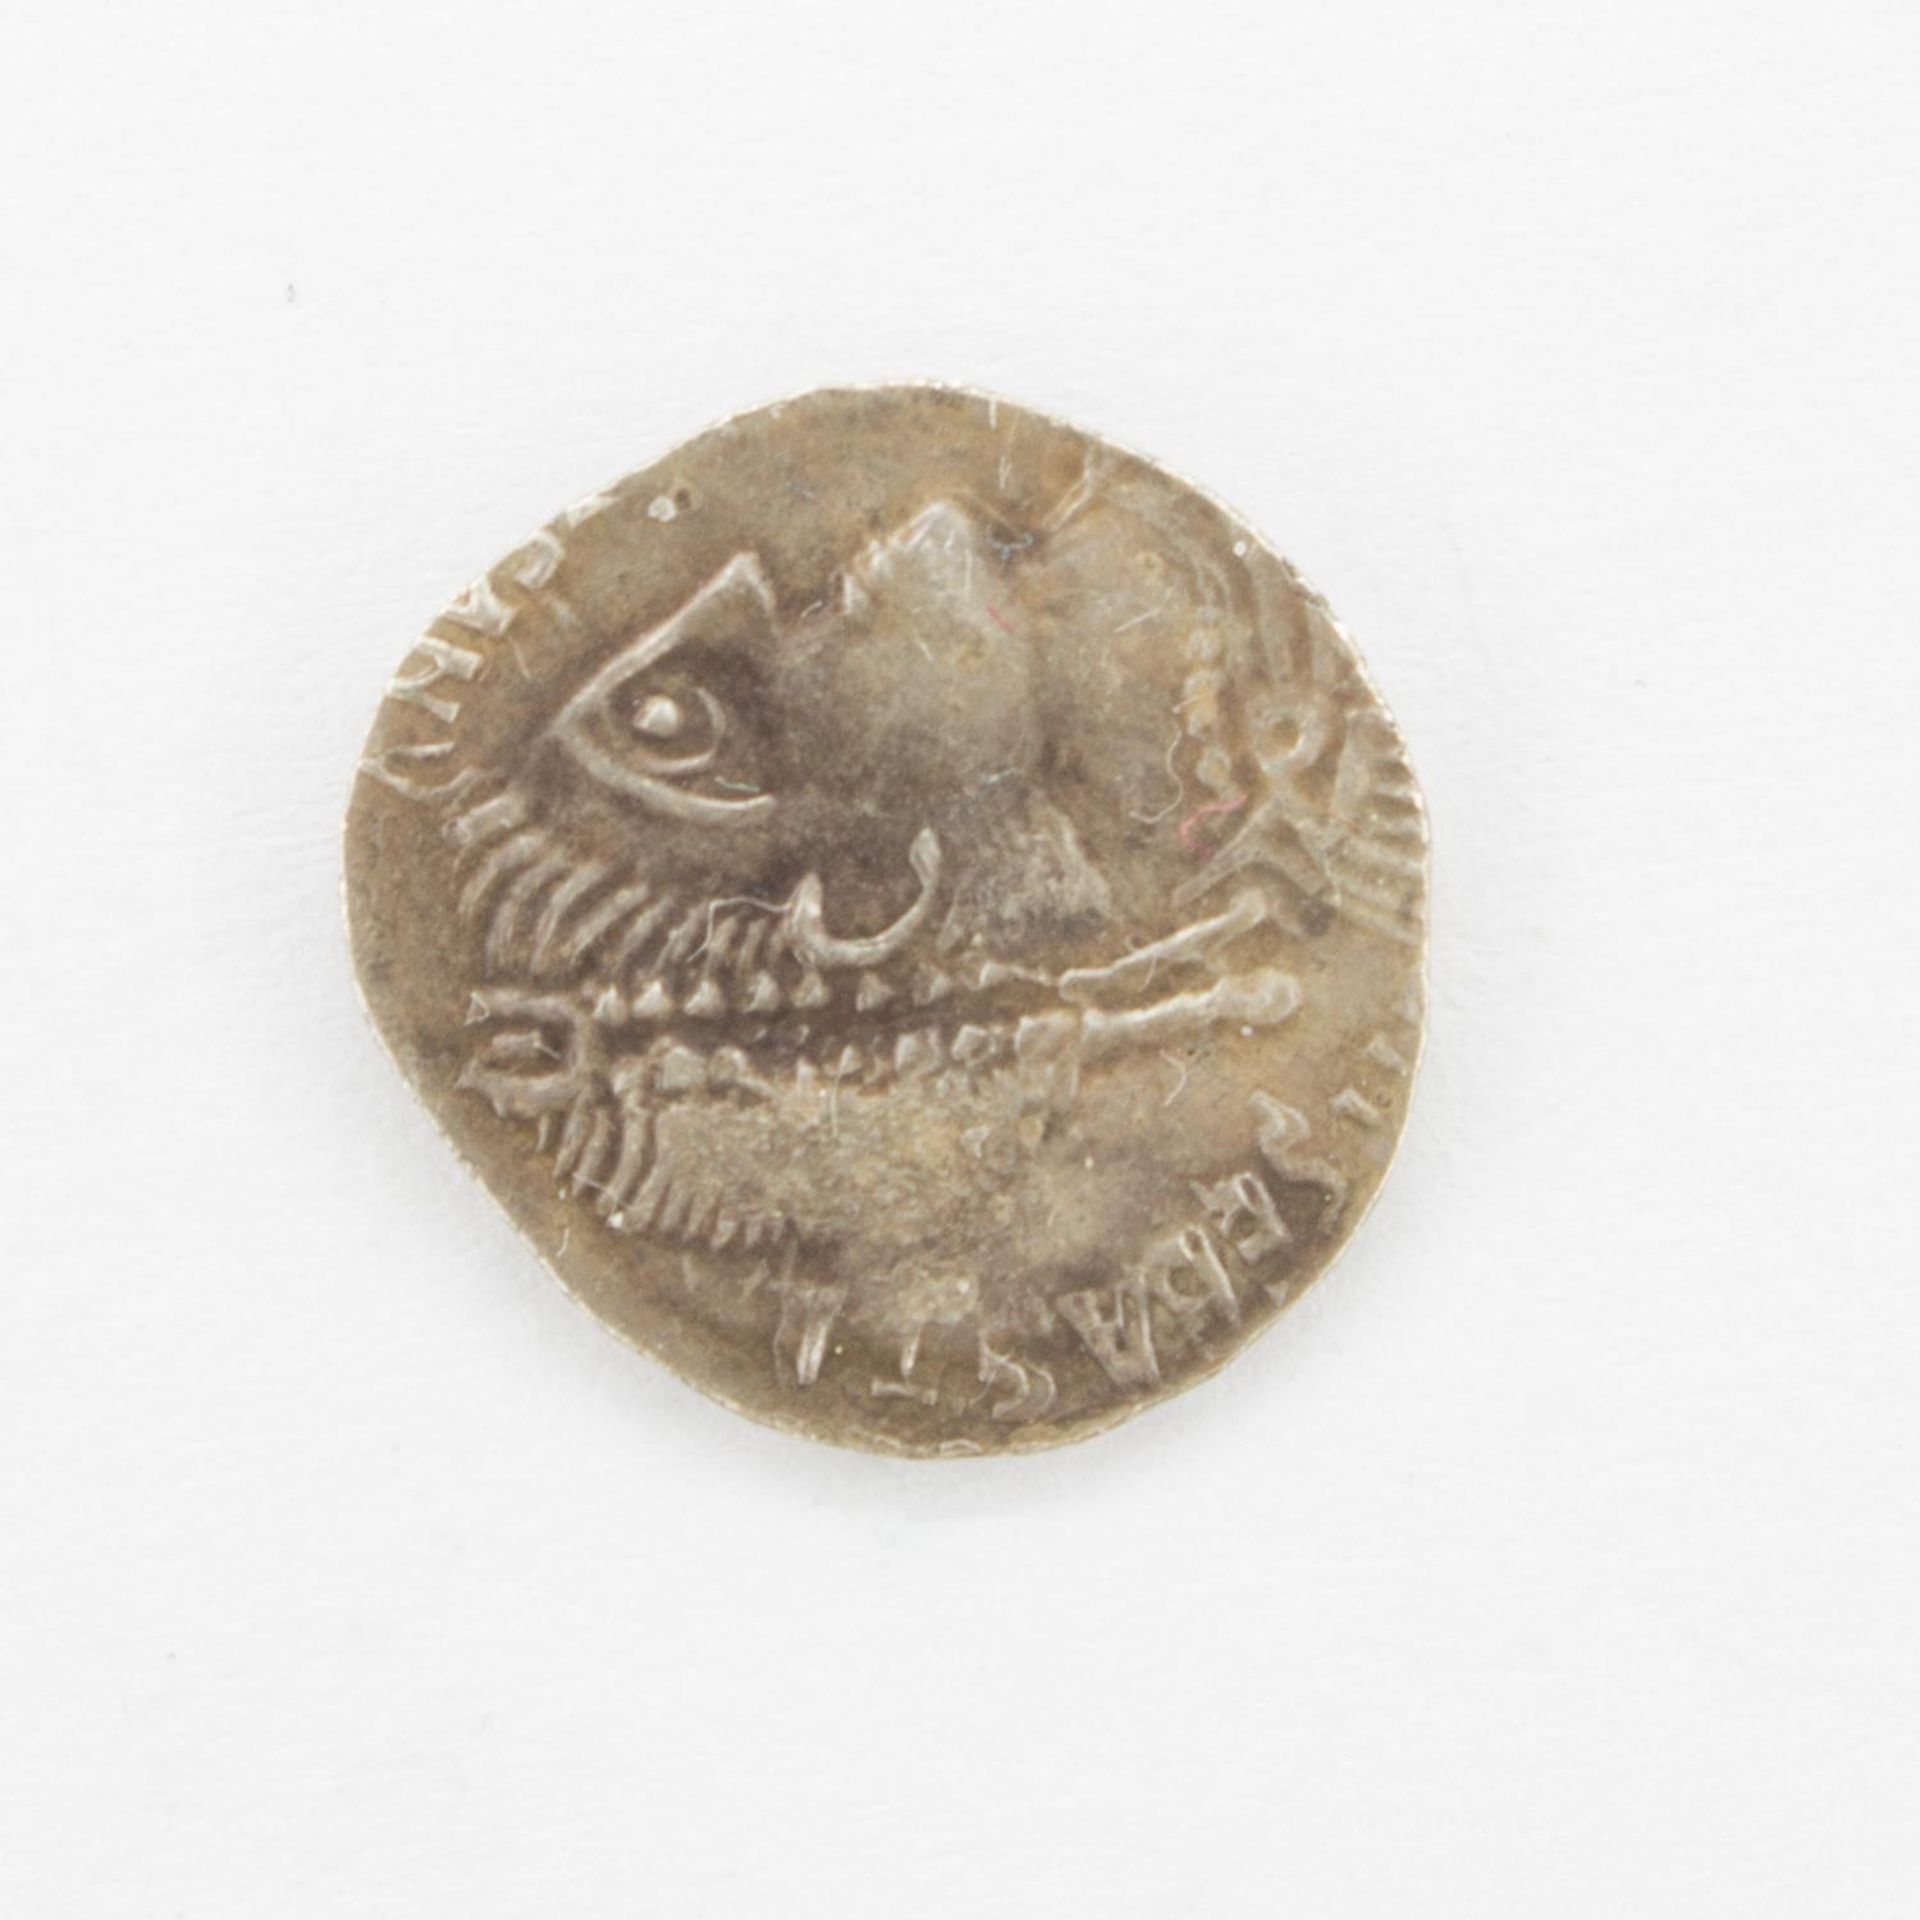 SiliquaRömisches Kaiserreich 411-412 n. Chr., Kaiser Sebastianus, Büste m. Diadem/ Monogramm, ss+